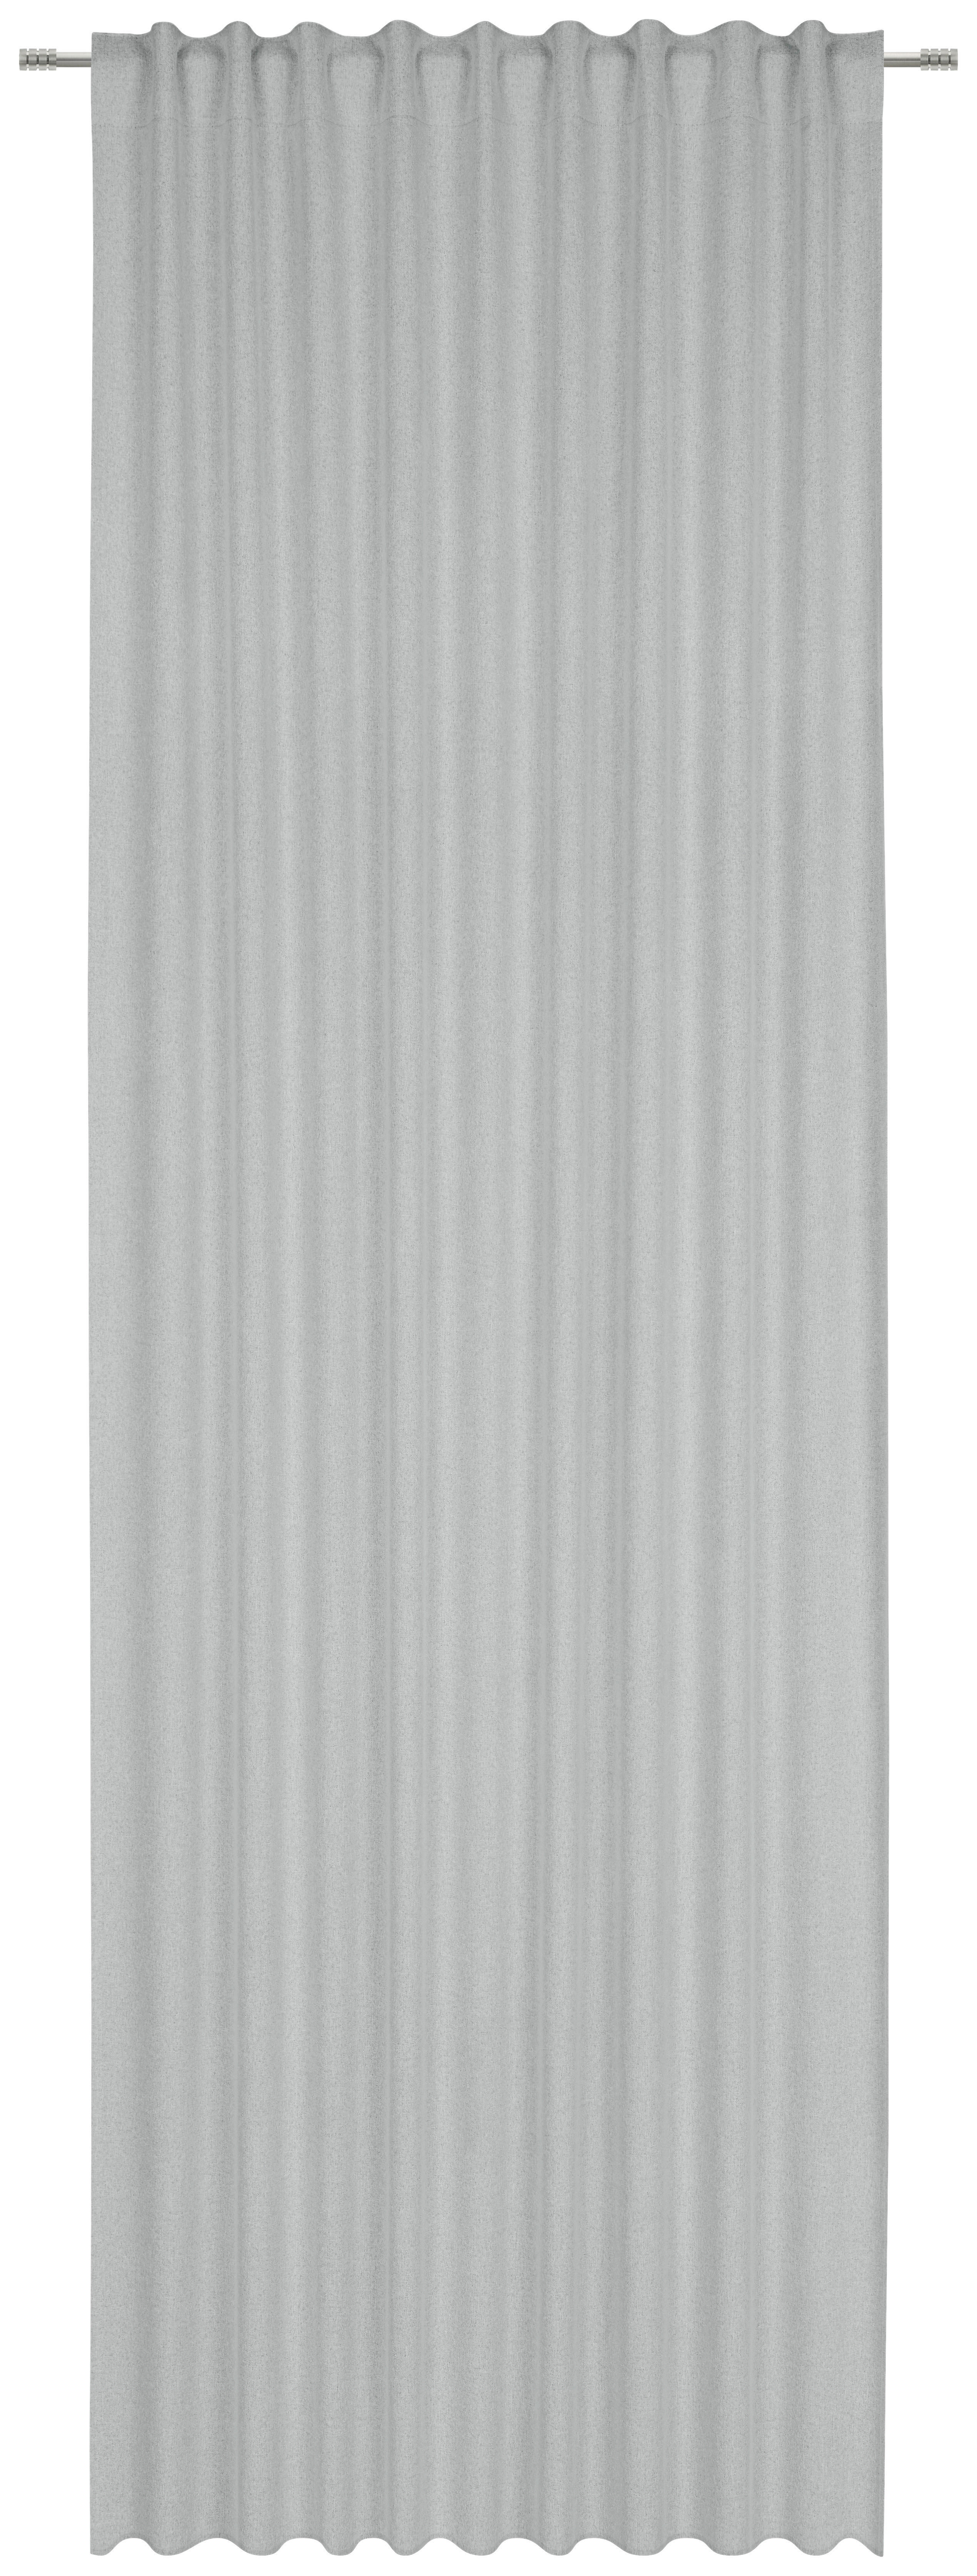 FERTIGVORHANG DUNCAN black-out (lichtundurchlässig) 135/300 cm   - Salbeigrün, KONVENTIONELL, Textil (135/300cm) - Esposa